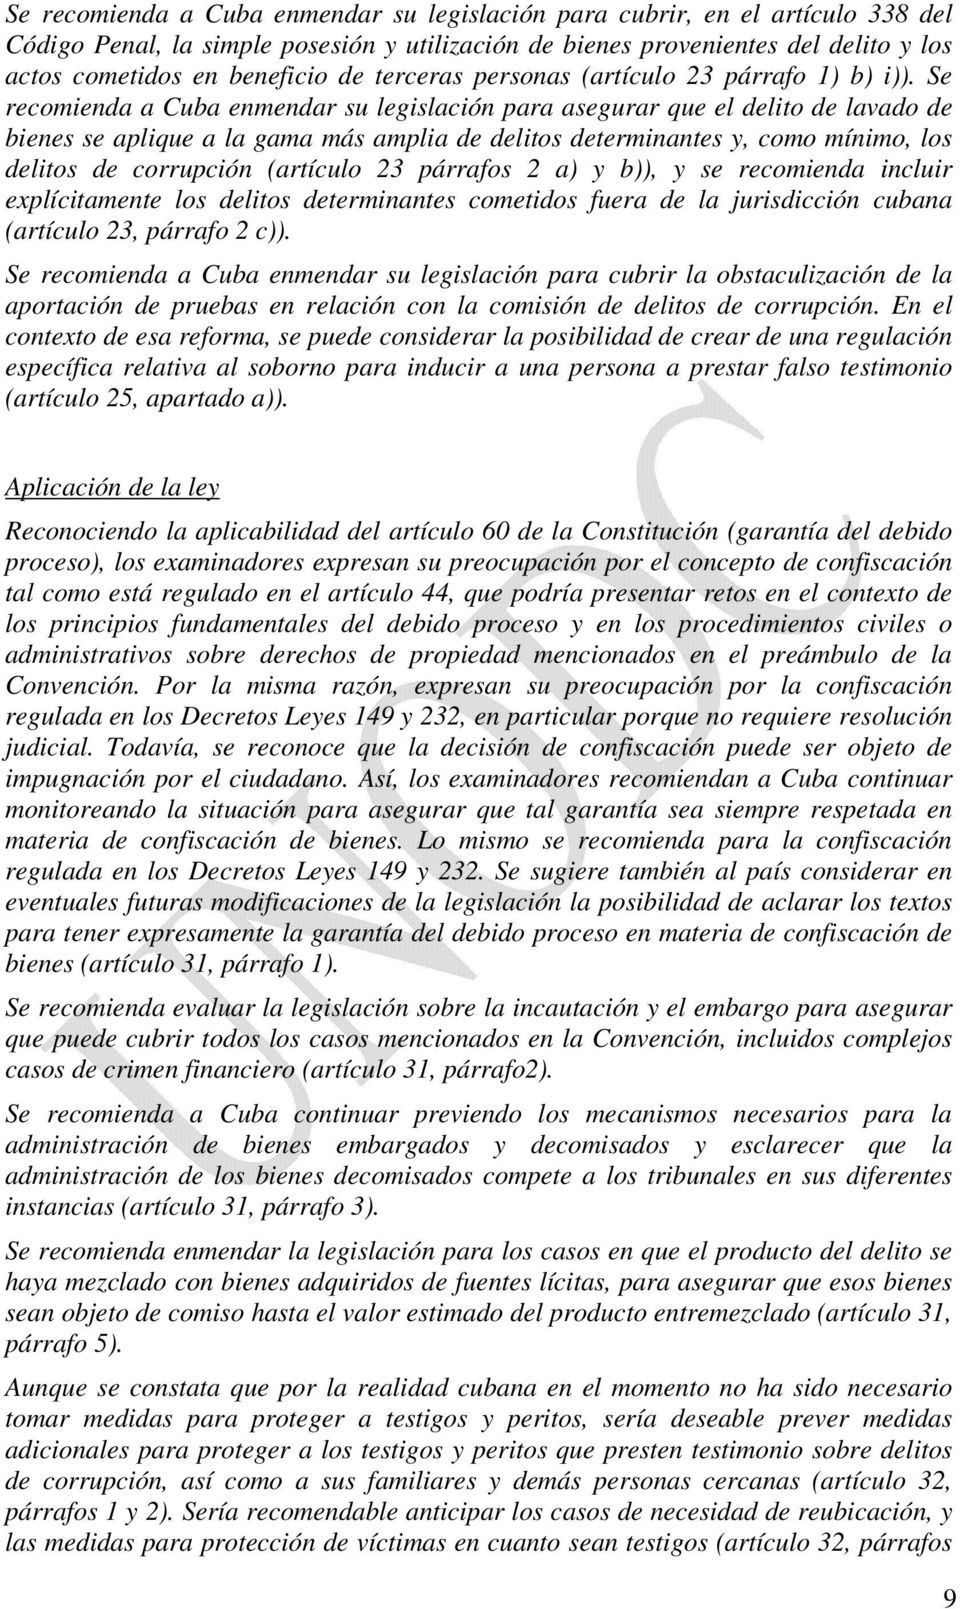 Se recomienda a Cuba enmendar su legislación para asegurar que el delito de lavado de bienes se aplique a la gama más amplia de delitos determinantes y, como mínimo, los delitos de corrupción ( 23